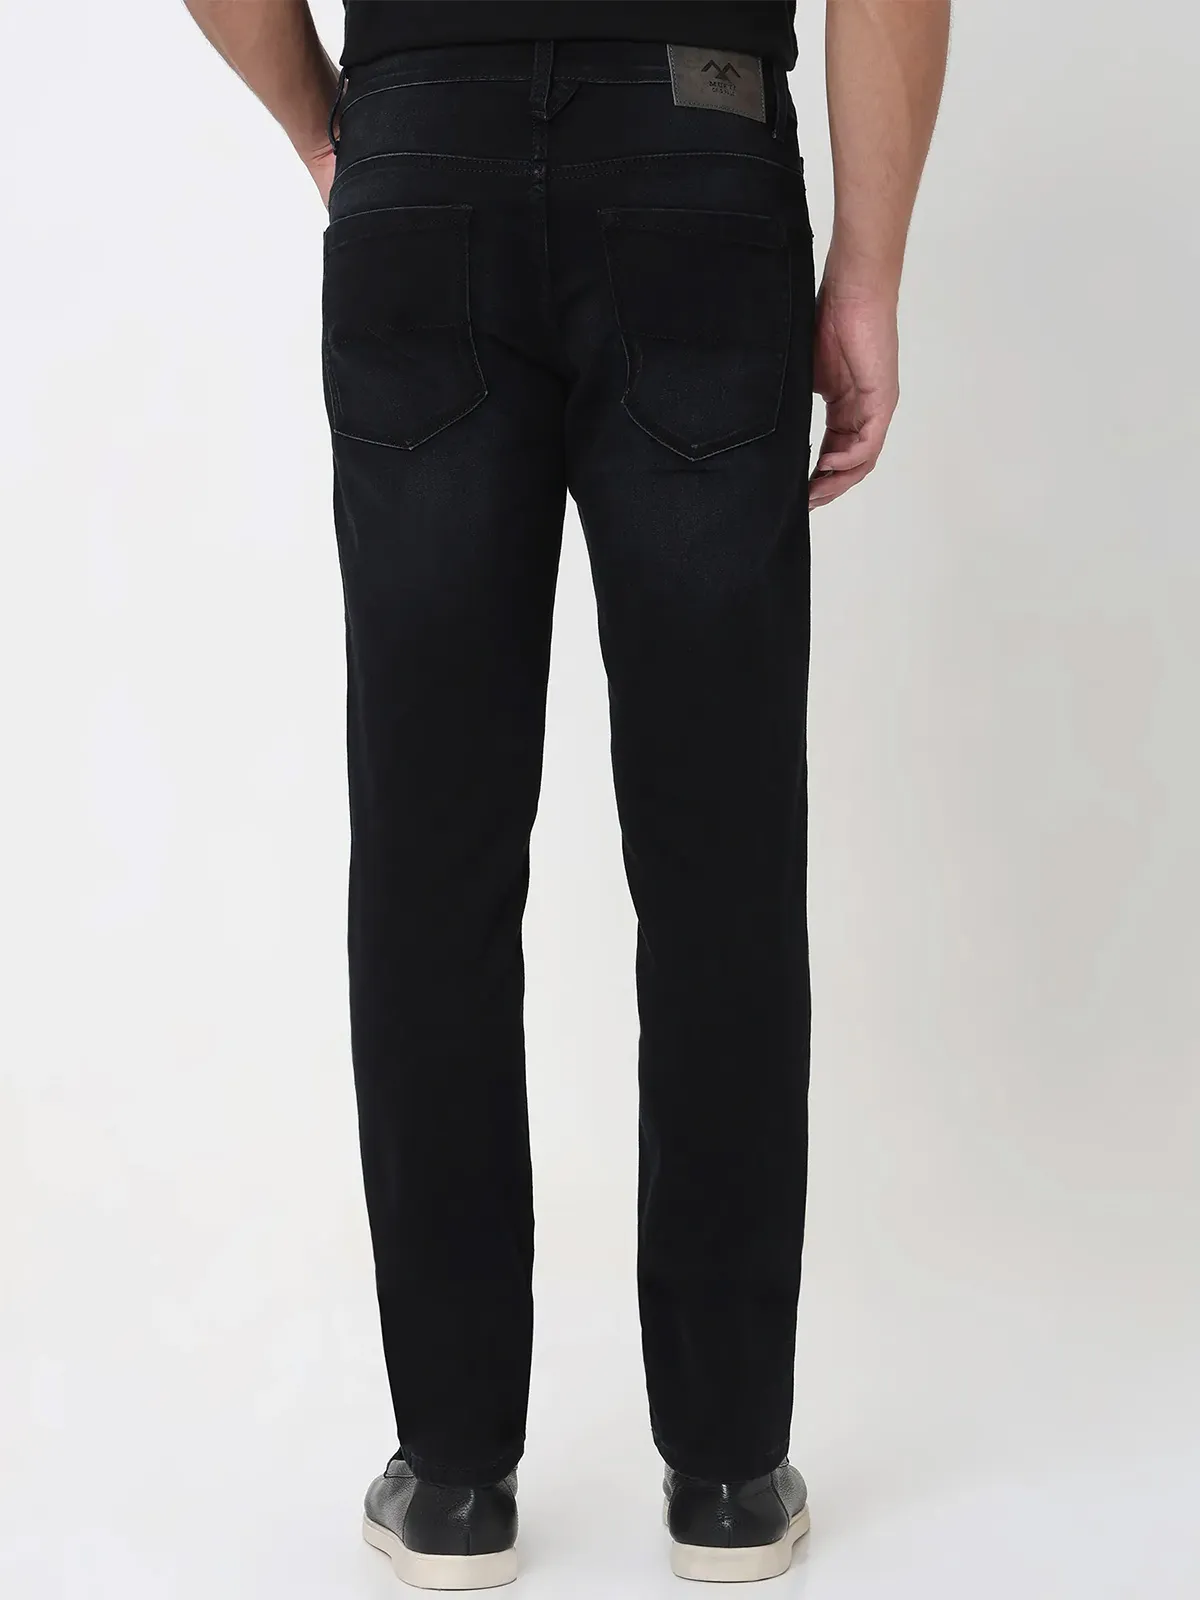 MUFTI black slim fit jeans